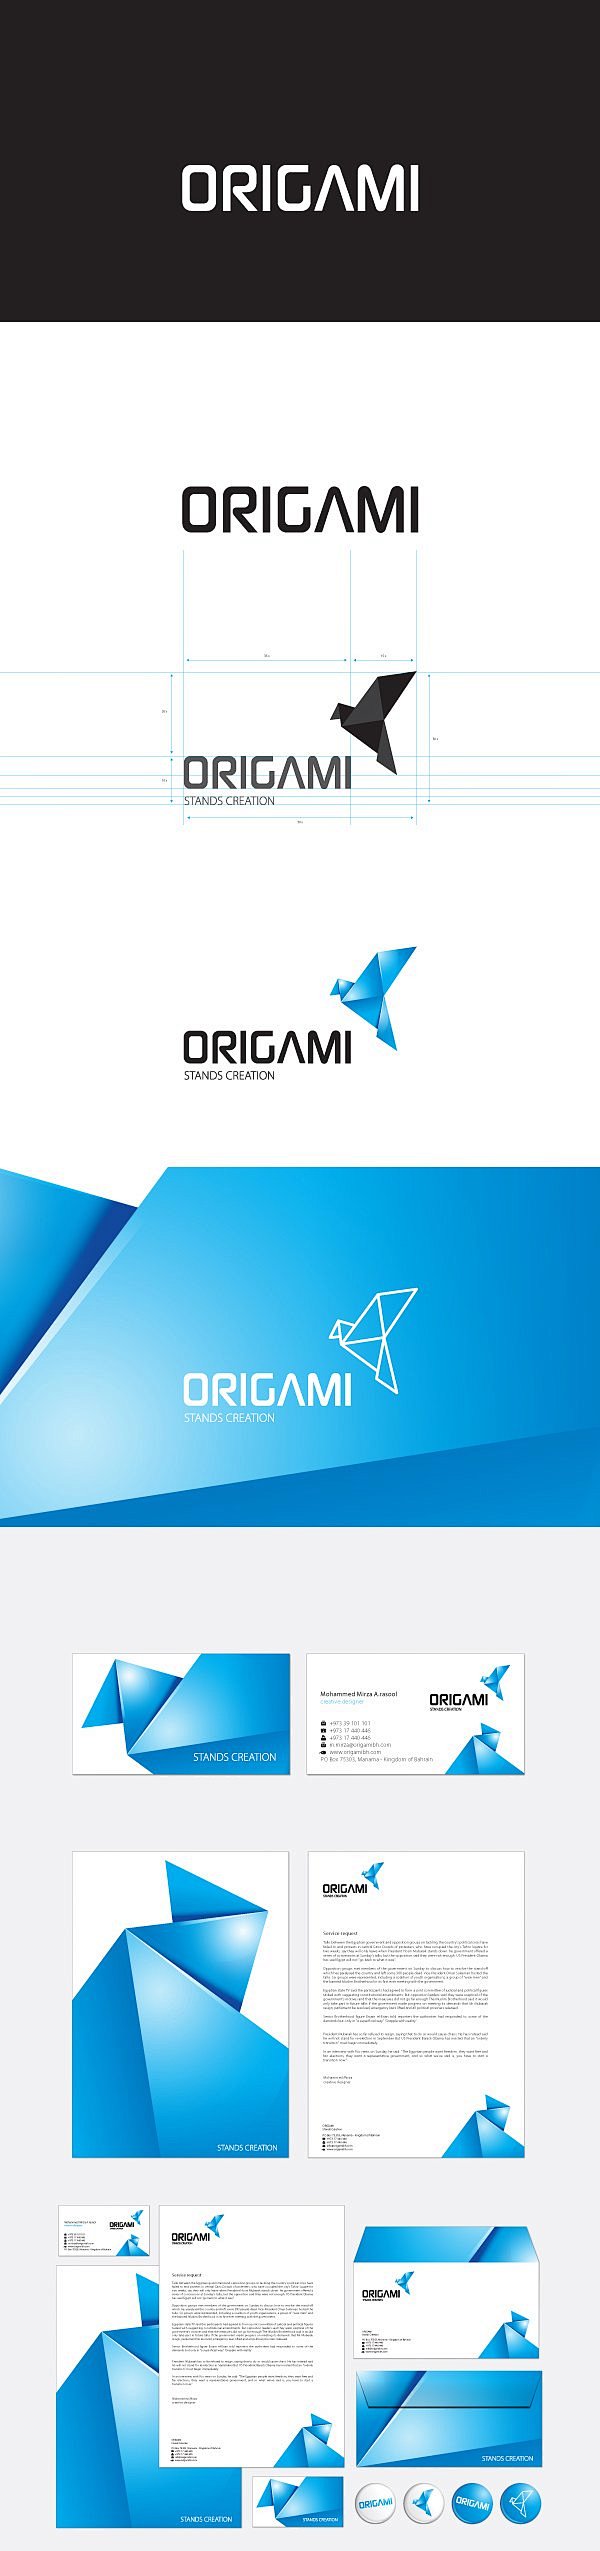 Origami视觉设计 | 视觉中国